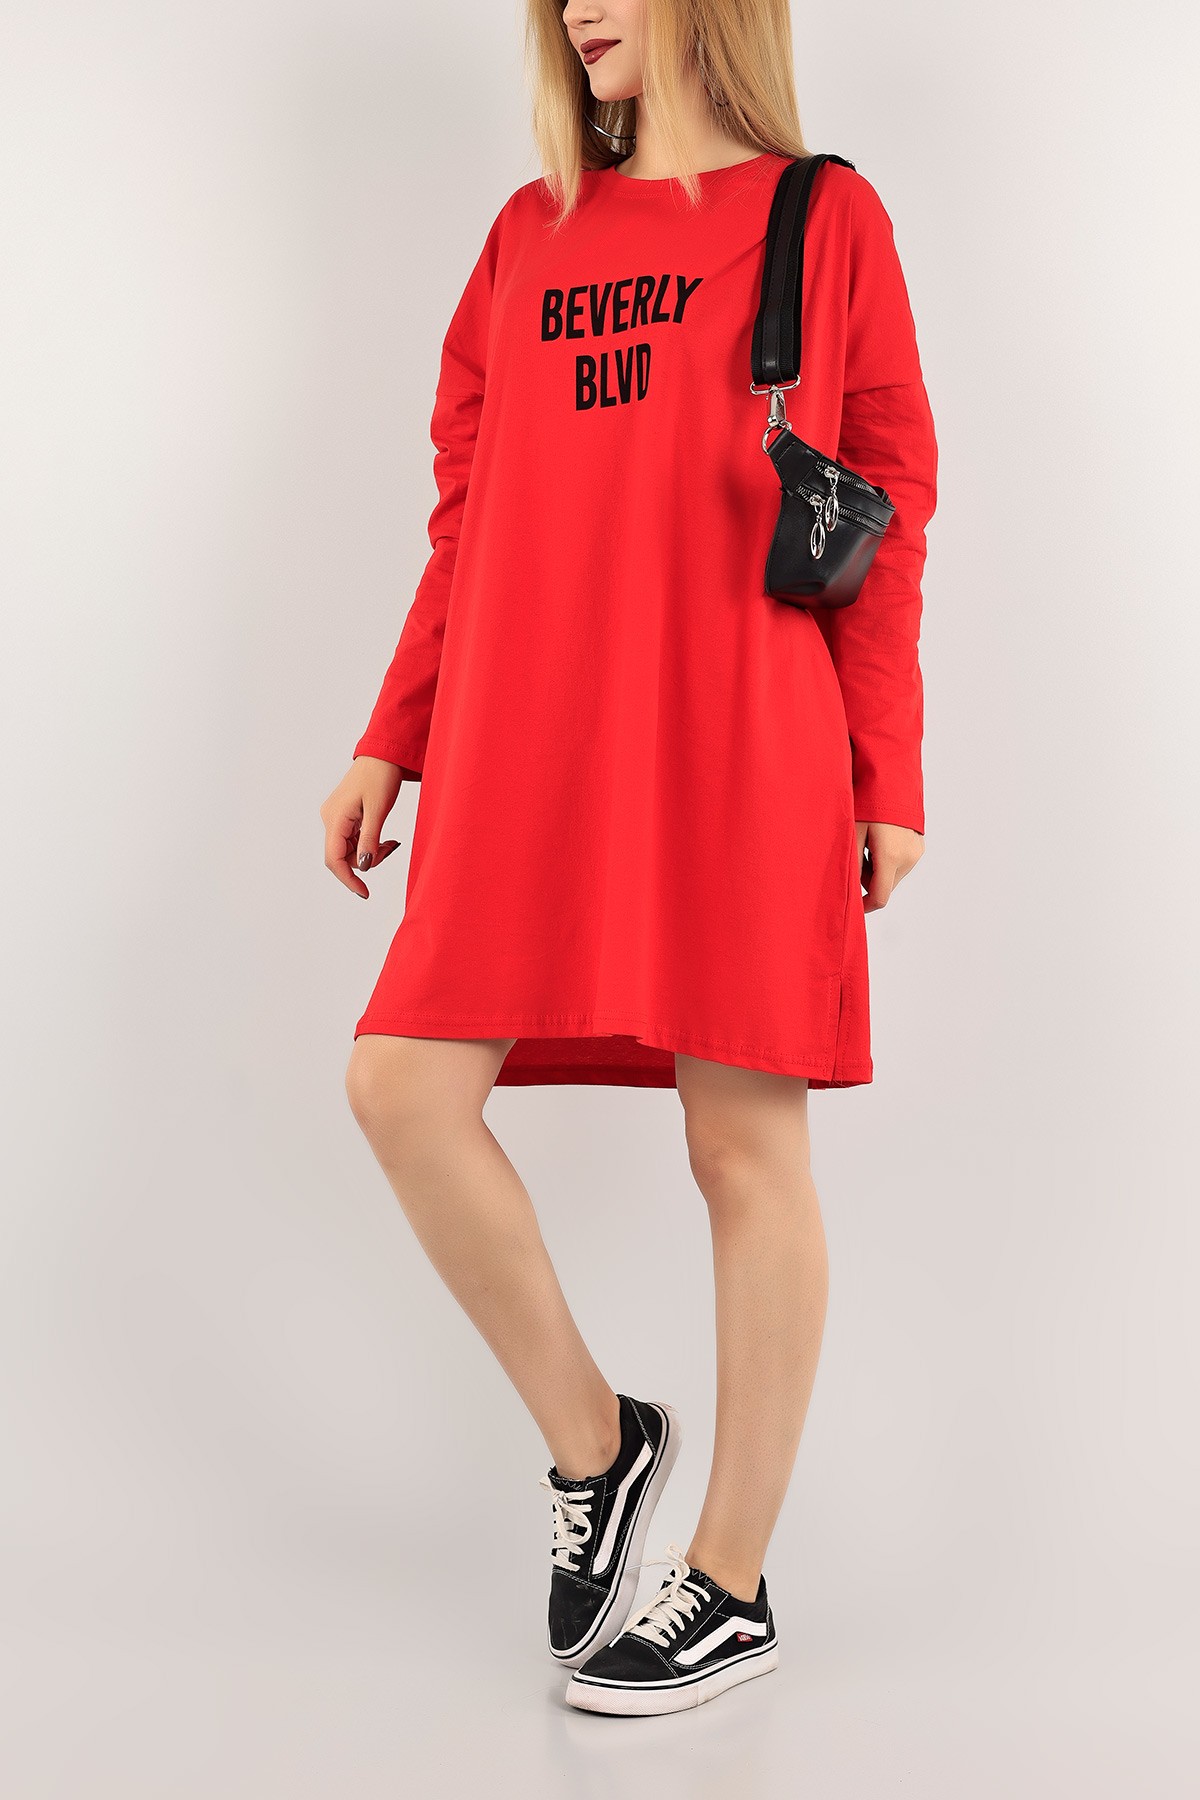 Kırmızı Rahat Kalıp Elbise Tunik 118384